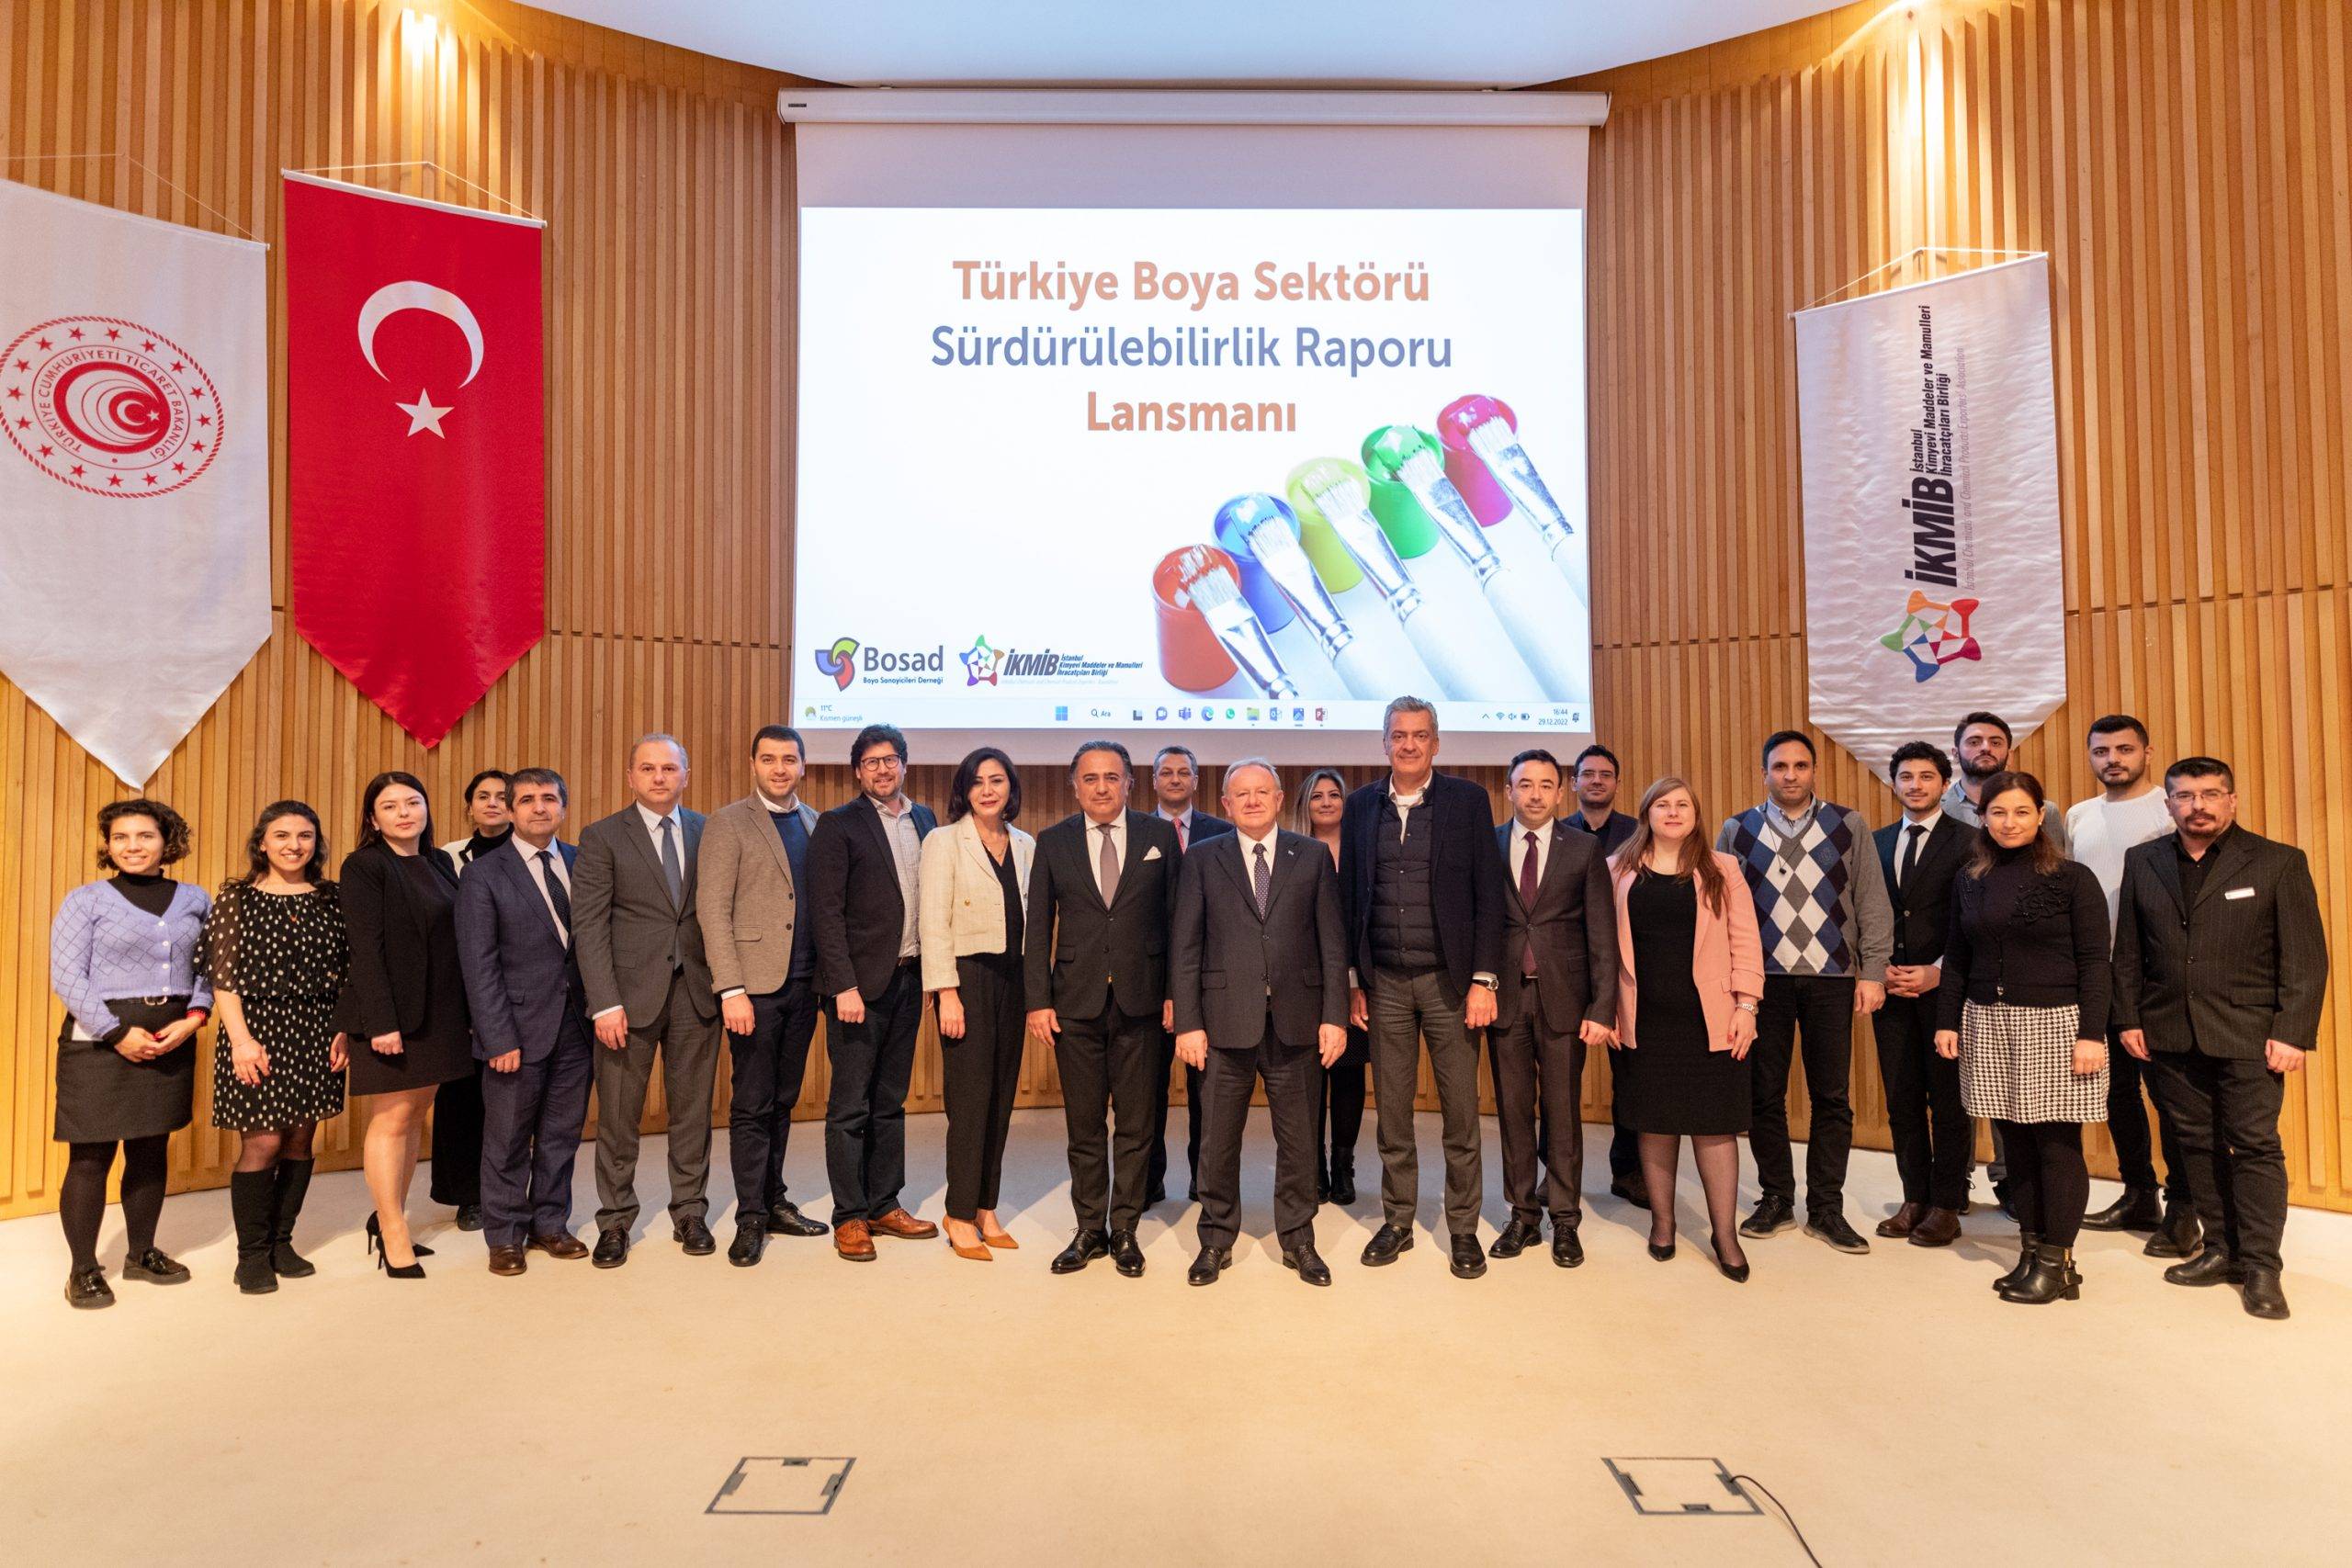 BOSAD Başkanı Akçalı: “Türkiye’nin İlk Türk Boya Sektörü Sürdürülebilirlik Raporu”